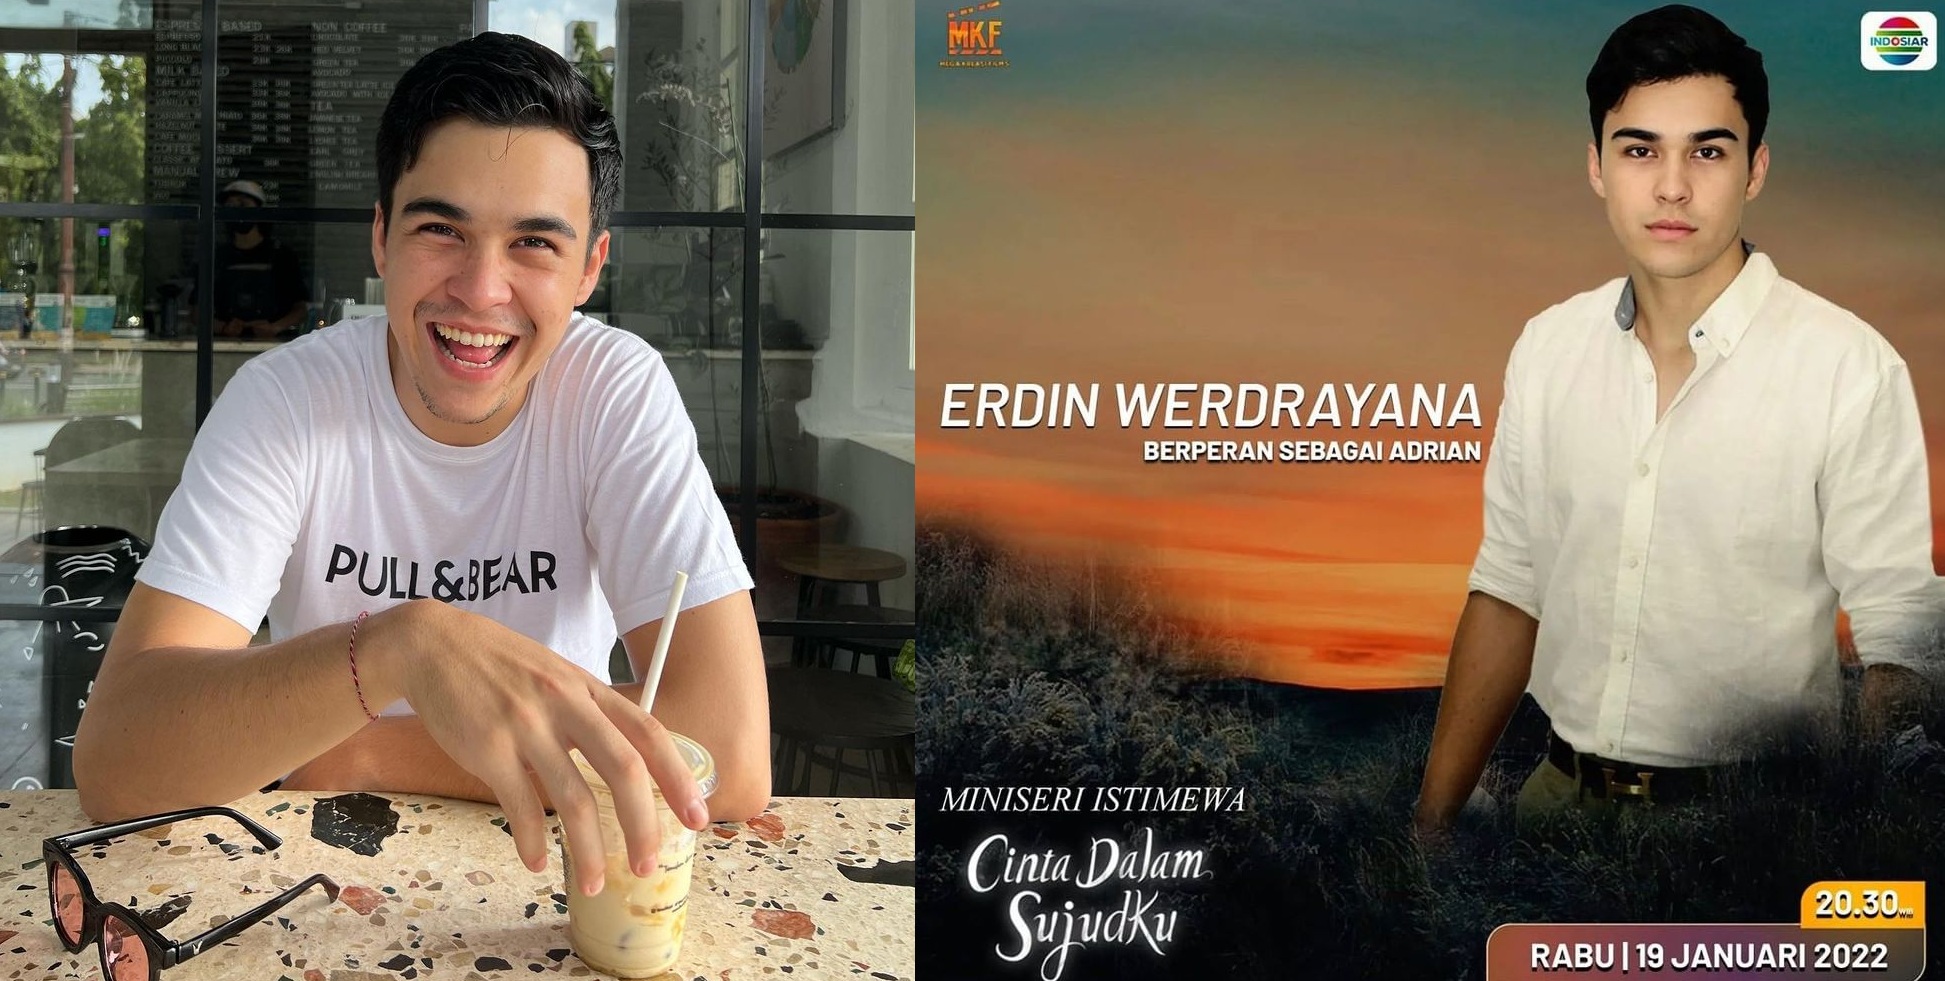 Profil dan Biodata Erdin Werdrayana: Umur, Agama, Instagram, Pemain Sinetron Cinta Dalam Sujudku